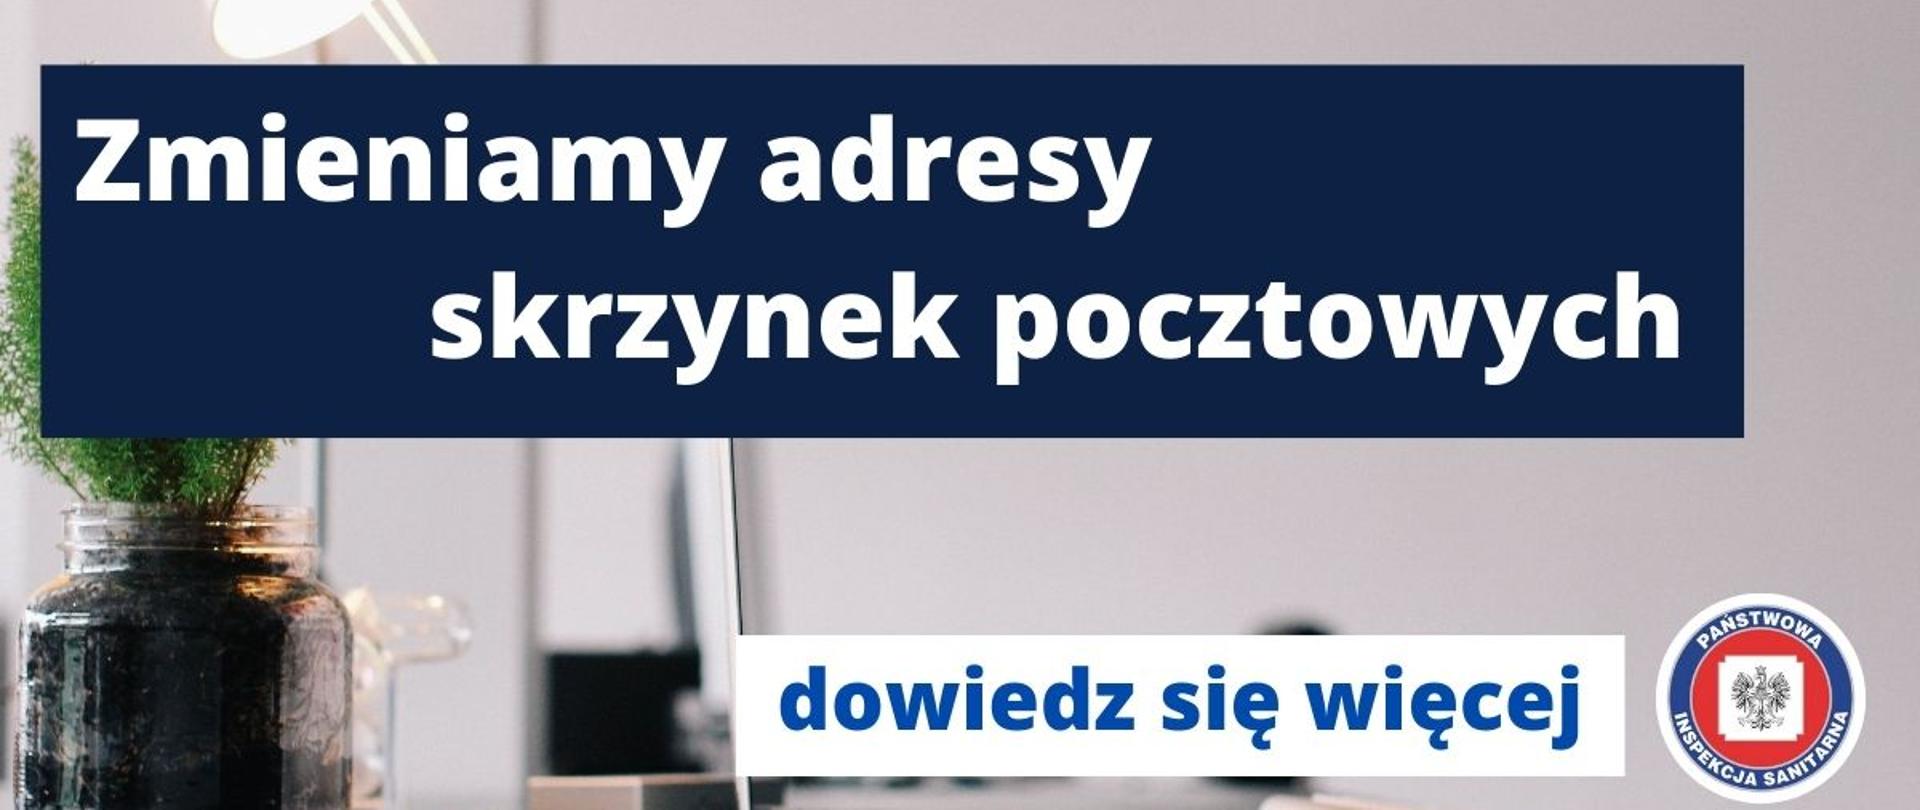 Od 14 czerwca 2022 r. nowa domena pocztowa Państwowej Inspekcji Sanitarnej: @sanepid.gov.pl. Dotychczasowe domeny zostają wyłączone i nie będą już aktywne.